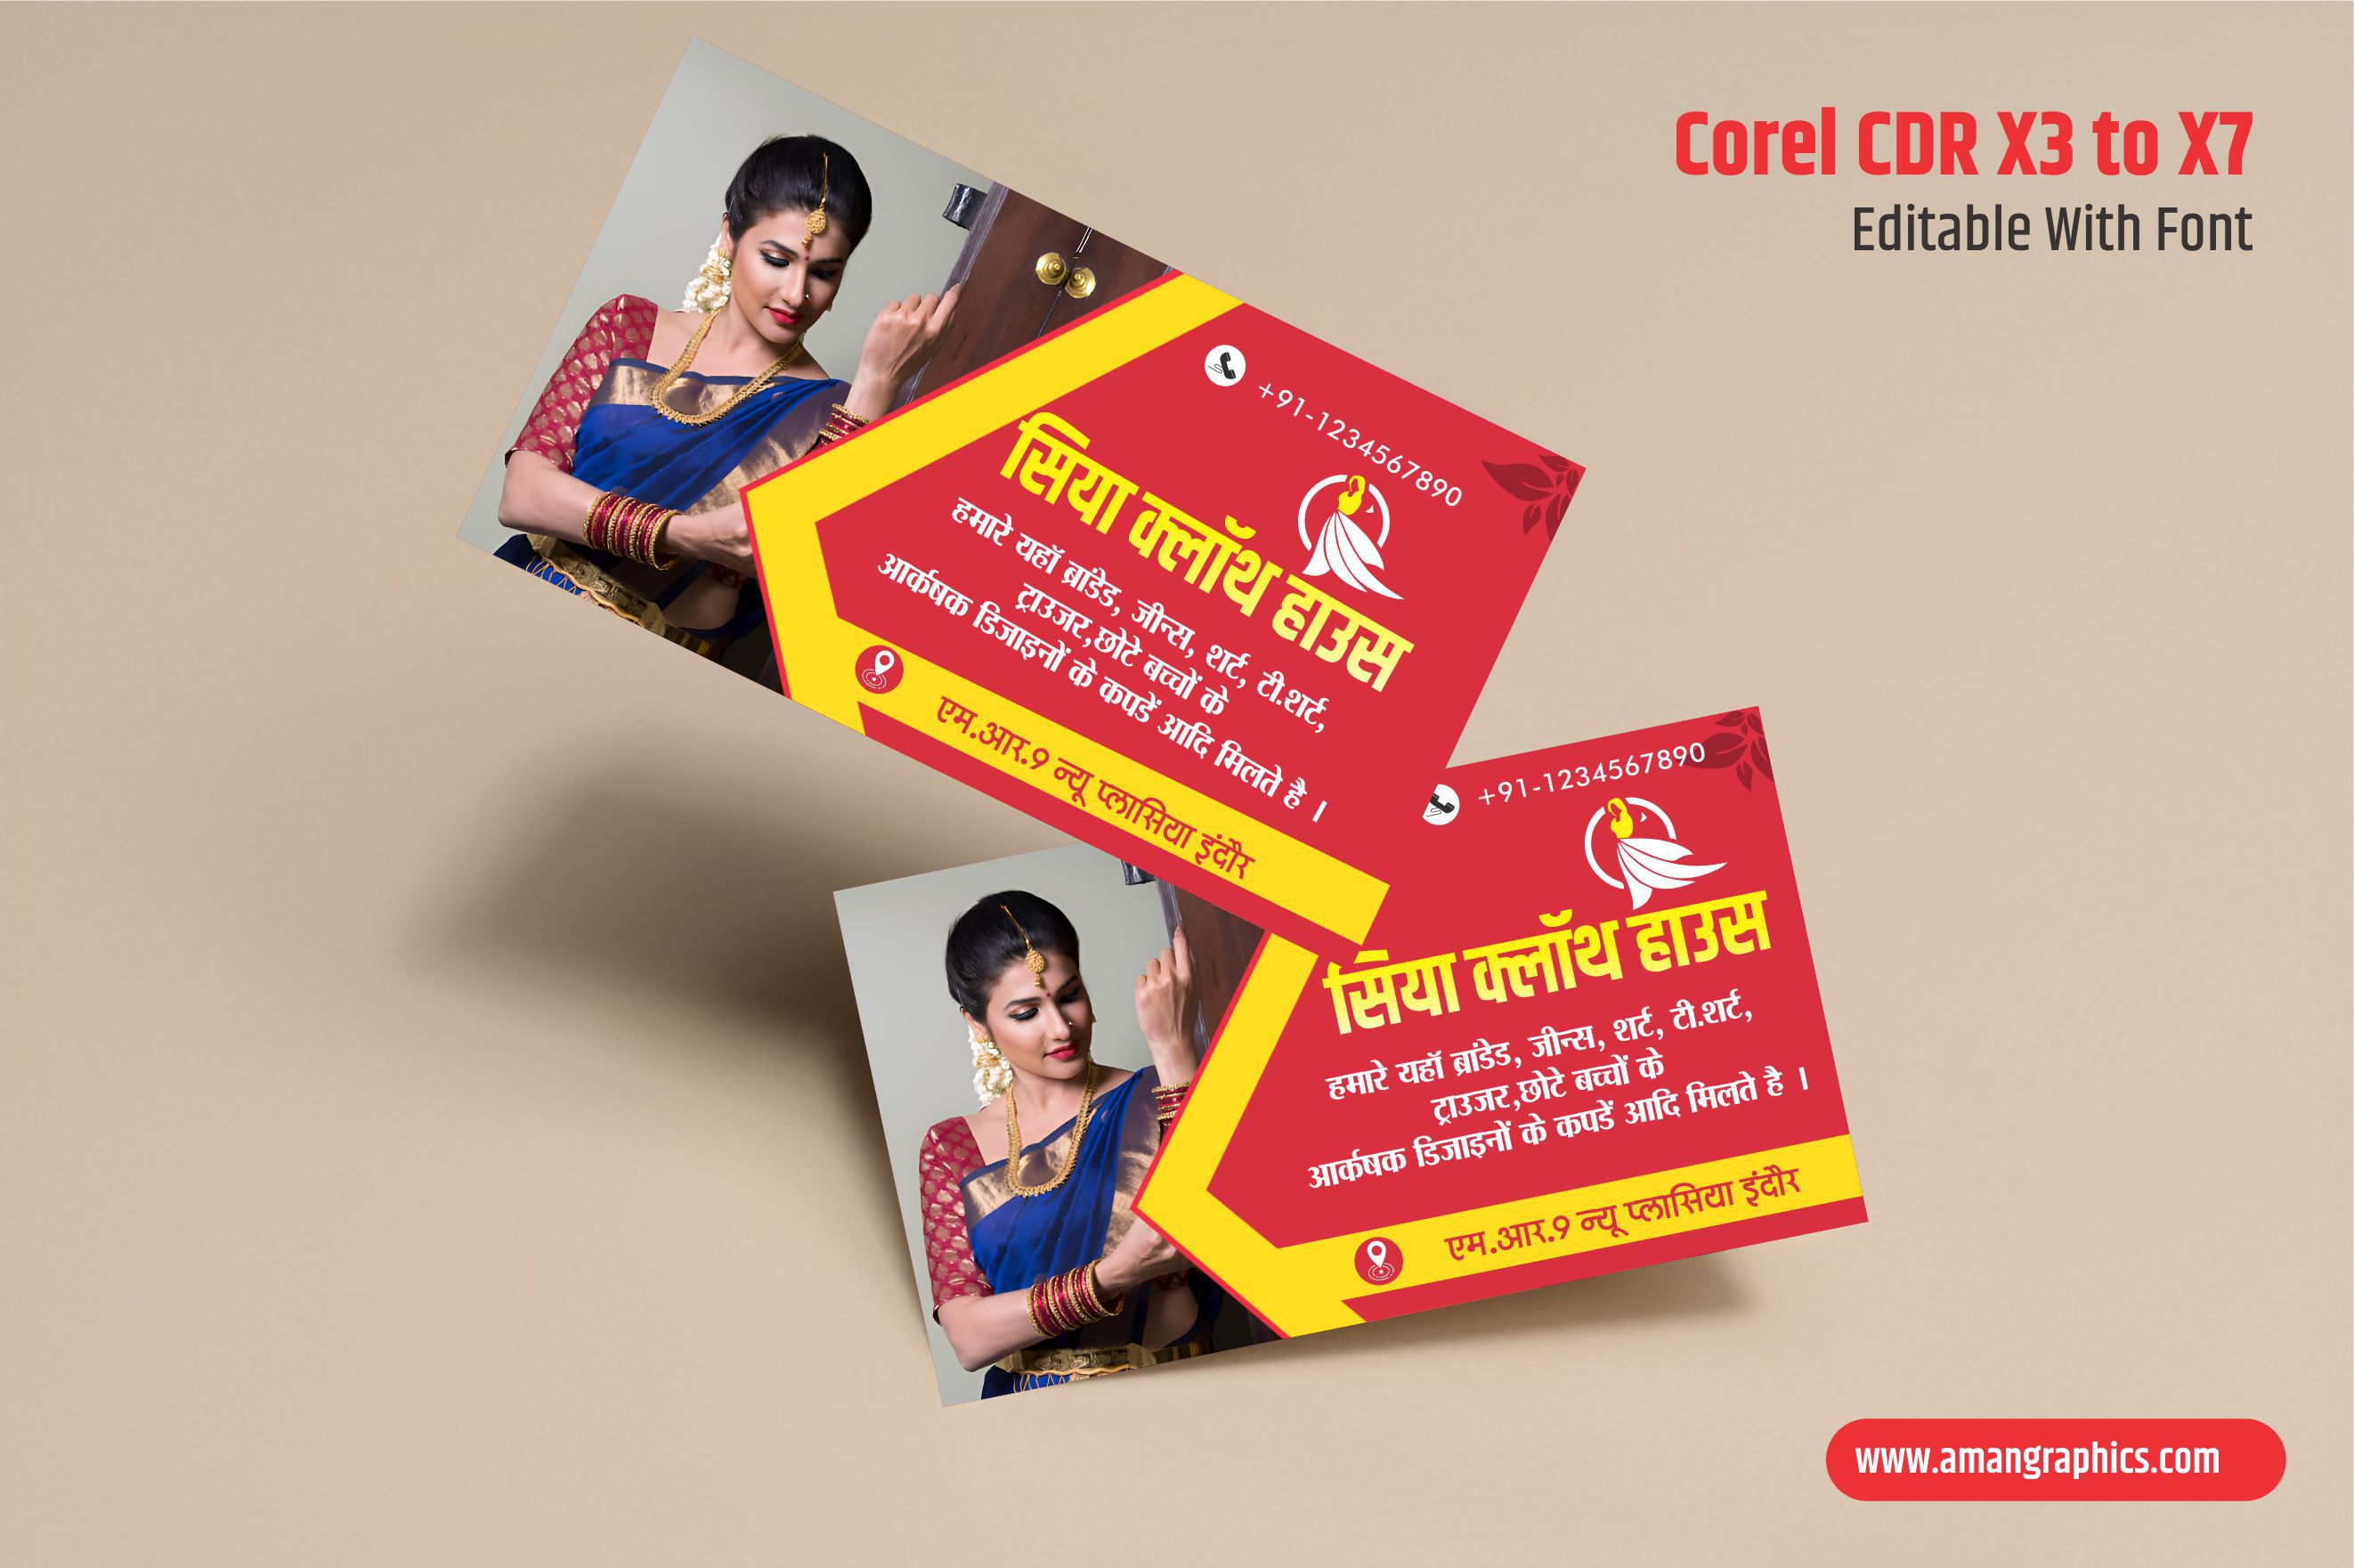 saree center visiting card design BUSINESS CARD VISITING CARD CDR